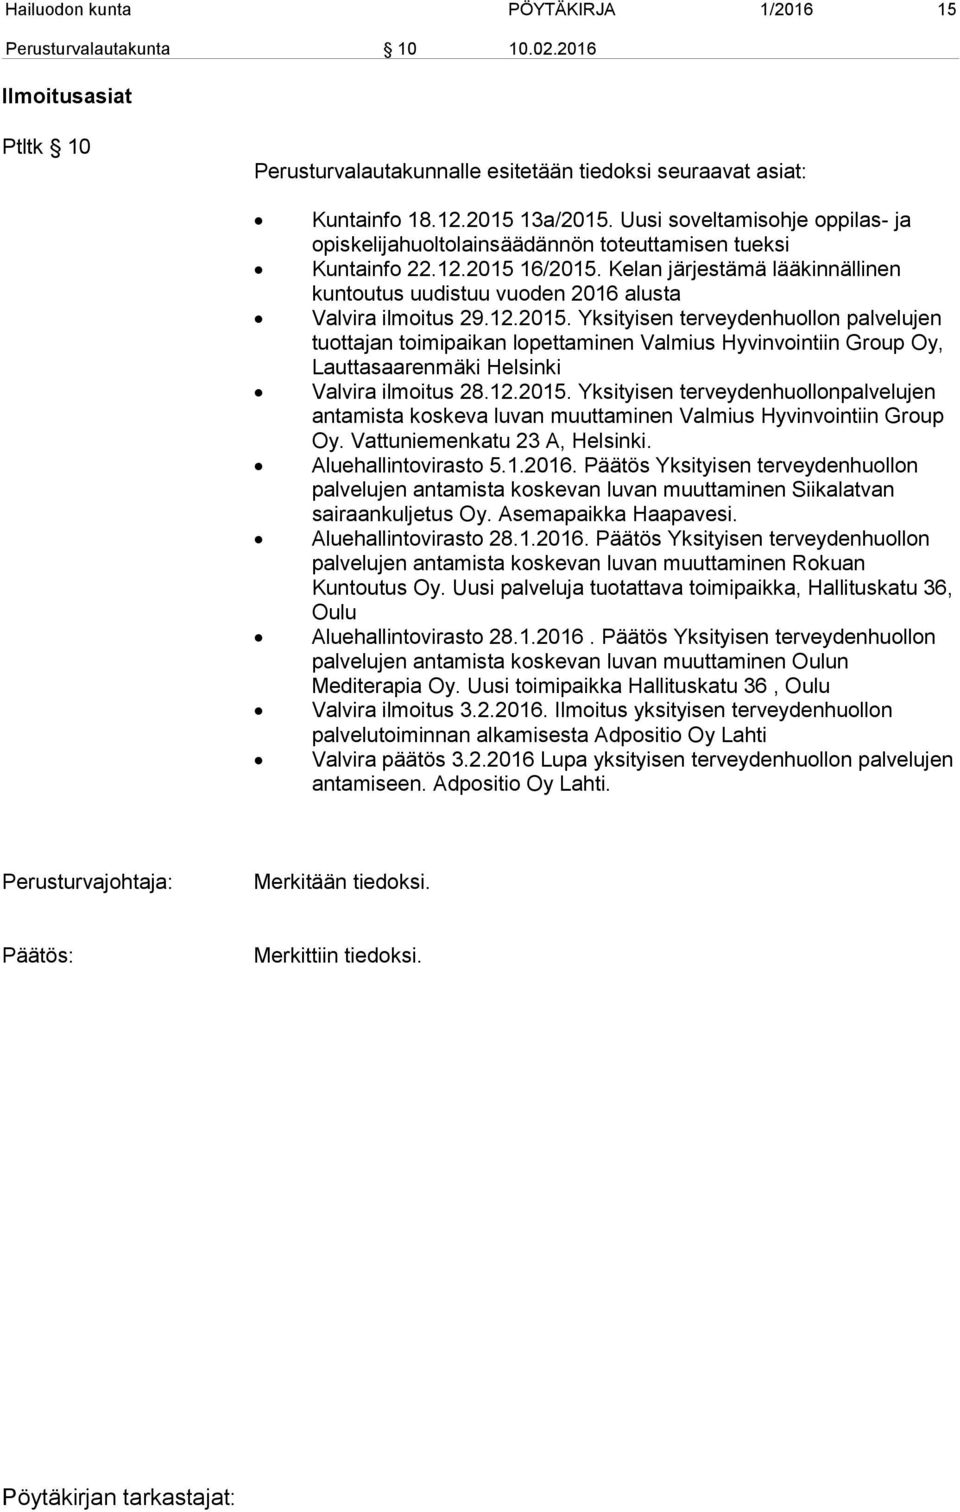 Kelan järjestämä lääkinnällinen kuntoutus uudistuu vuoden 2016 alusta Valvira ilmoitus 29.12.2015.